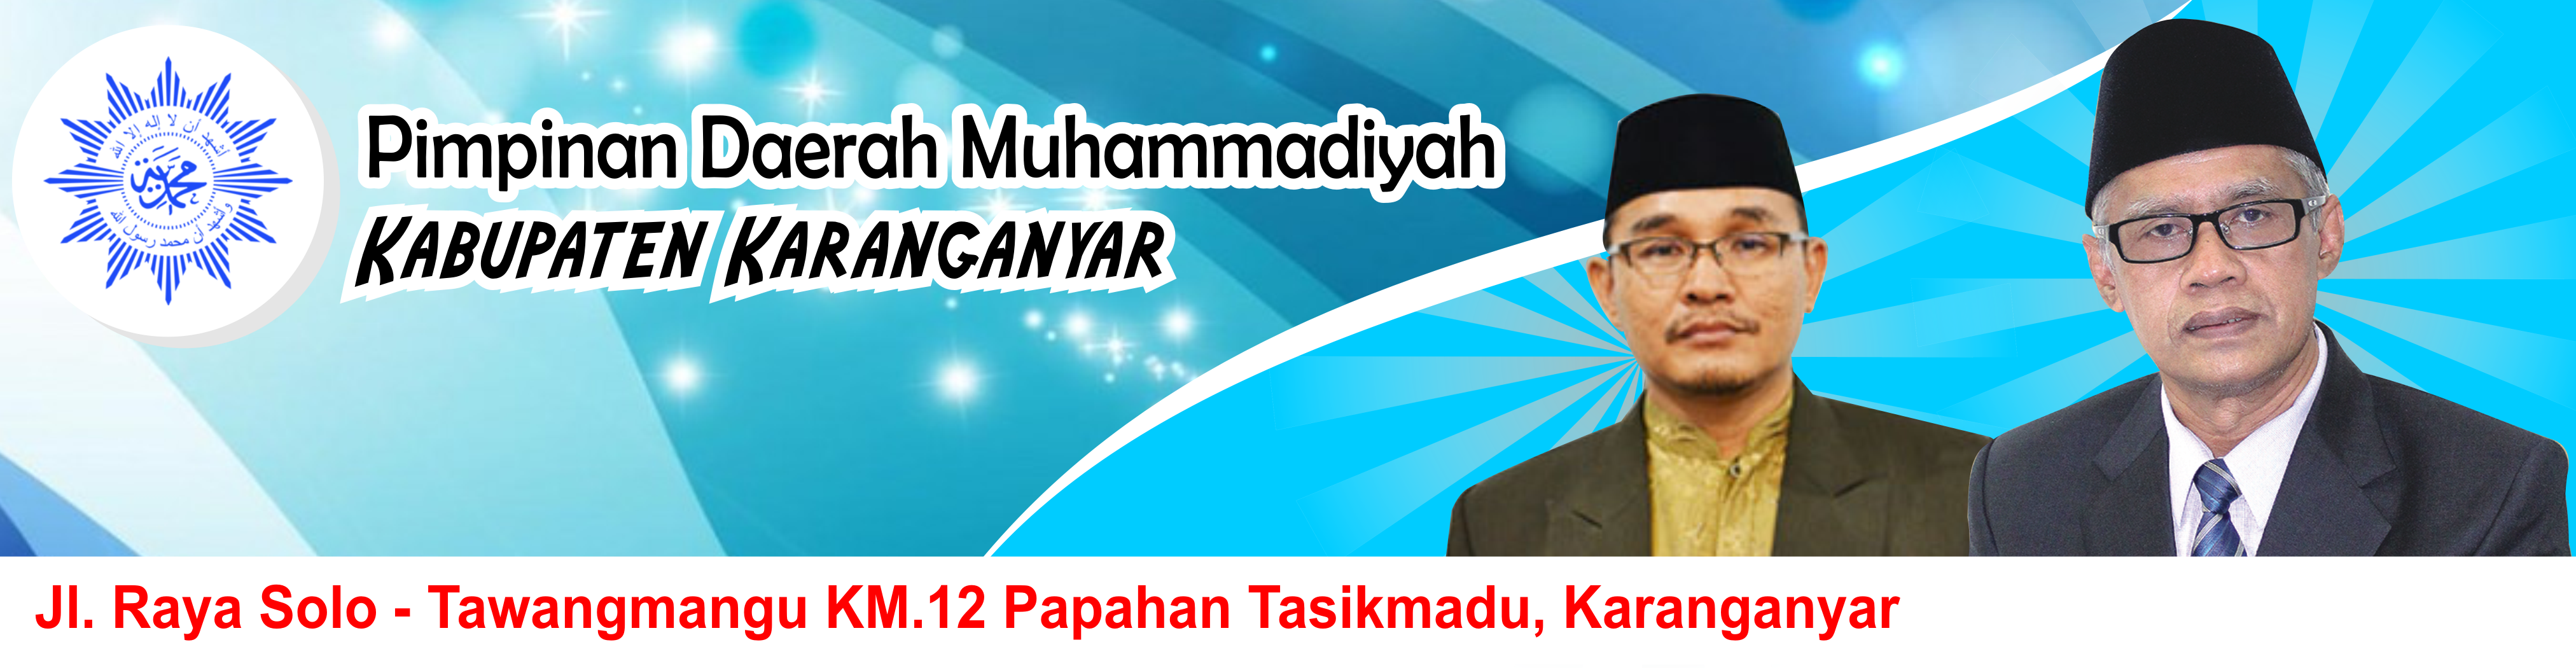 Majelis Pemberdayaan Masyarakat Pimpinan Daerah Muhammadiyah Kabupaten Karanganyar